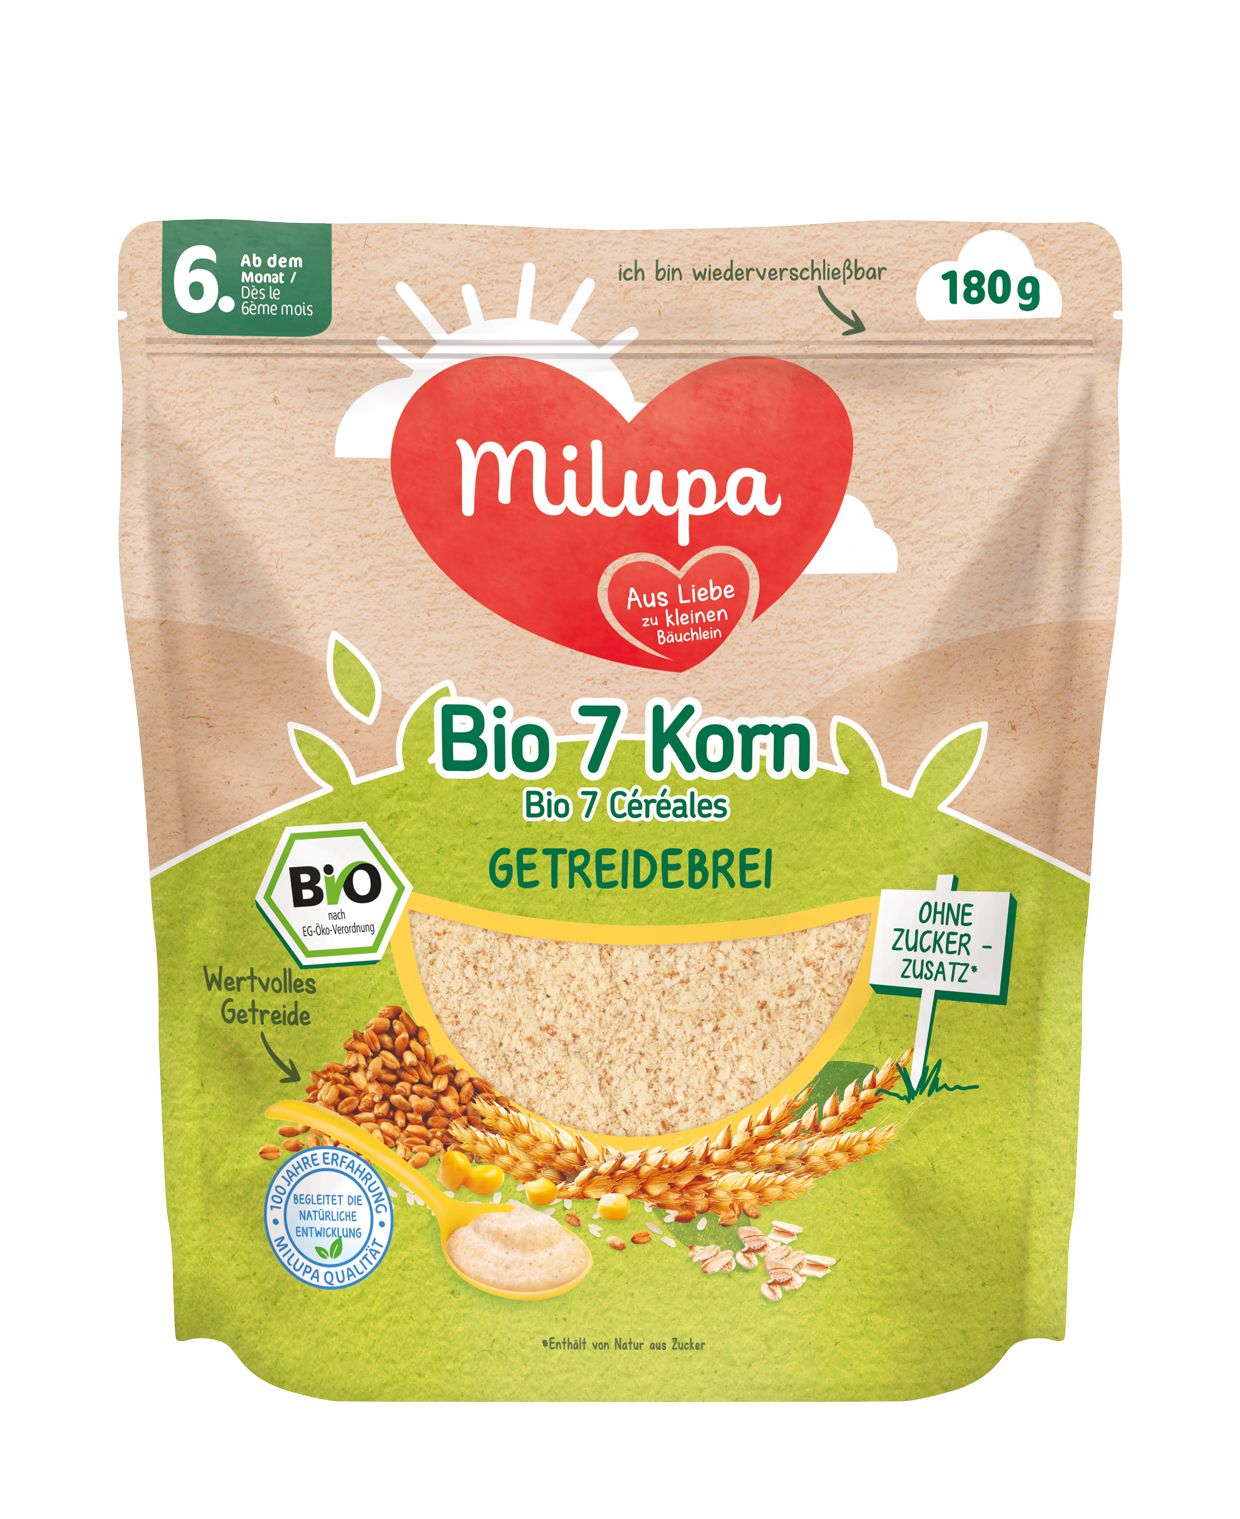 Milupa Packshot Bio 7 Korn Getreidebrei ab dem 6 Monat 180g AT